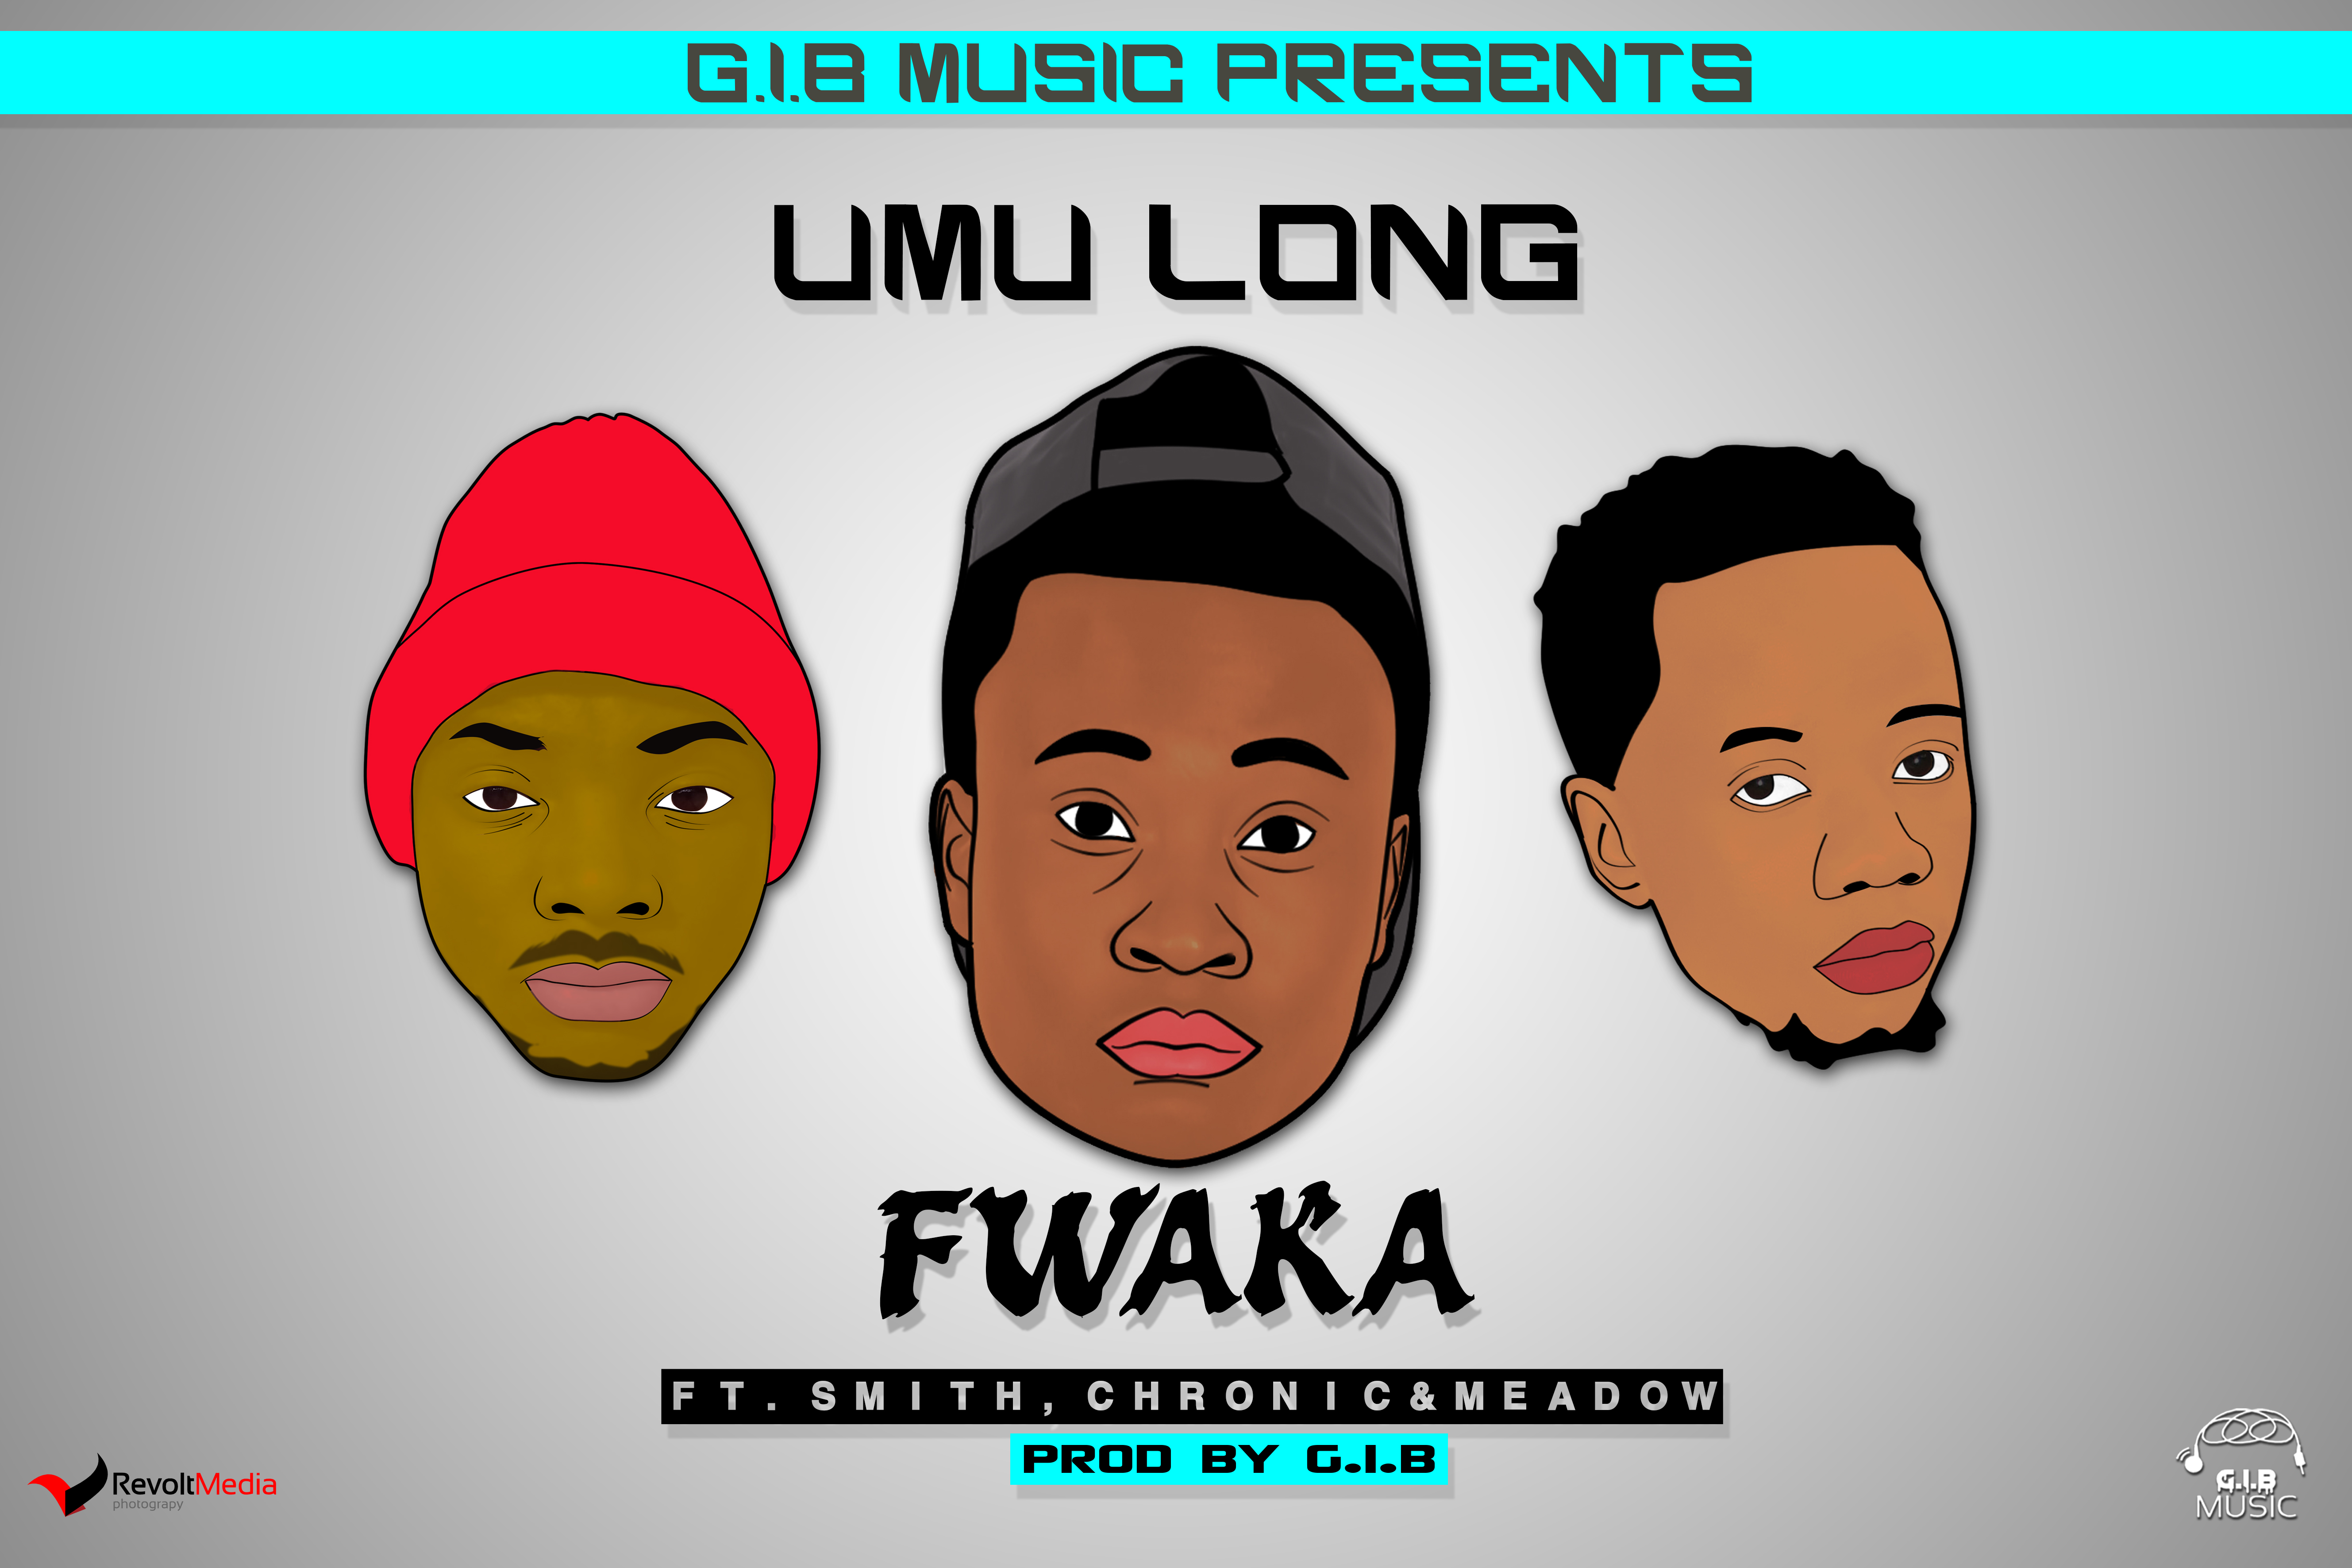 Umu Long - "Fwaka" Ft. Smith,Chronic & Meadow (Prod. By G.I.B)